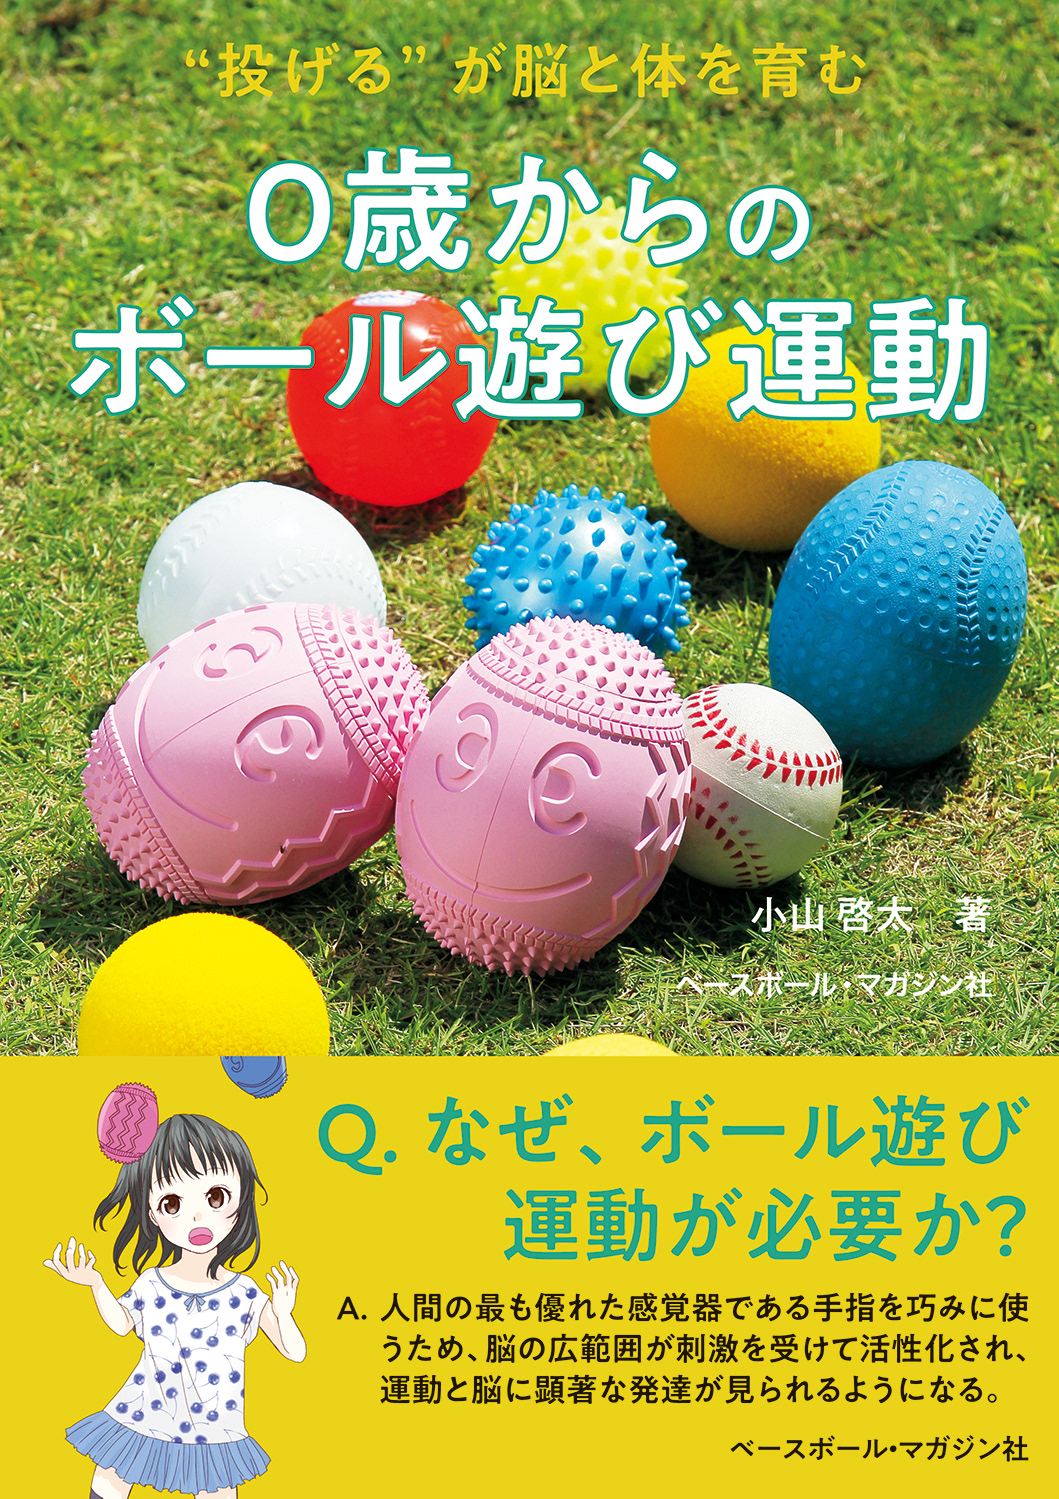 牧森小倉 Oguramakimori Portfolio イラスト 0歳からのボール遊び運動